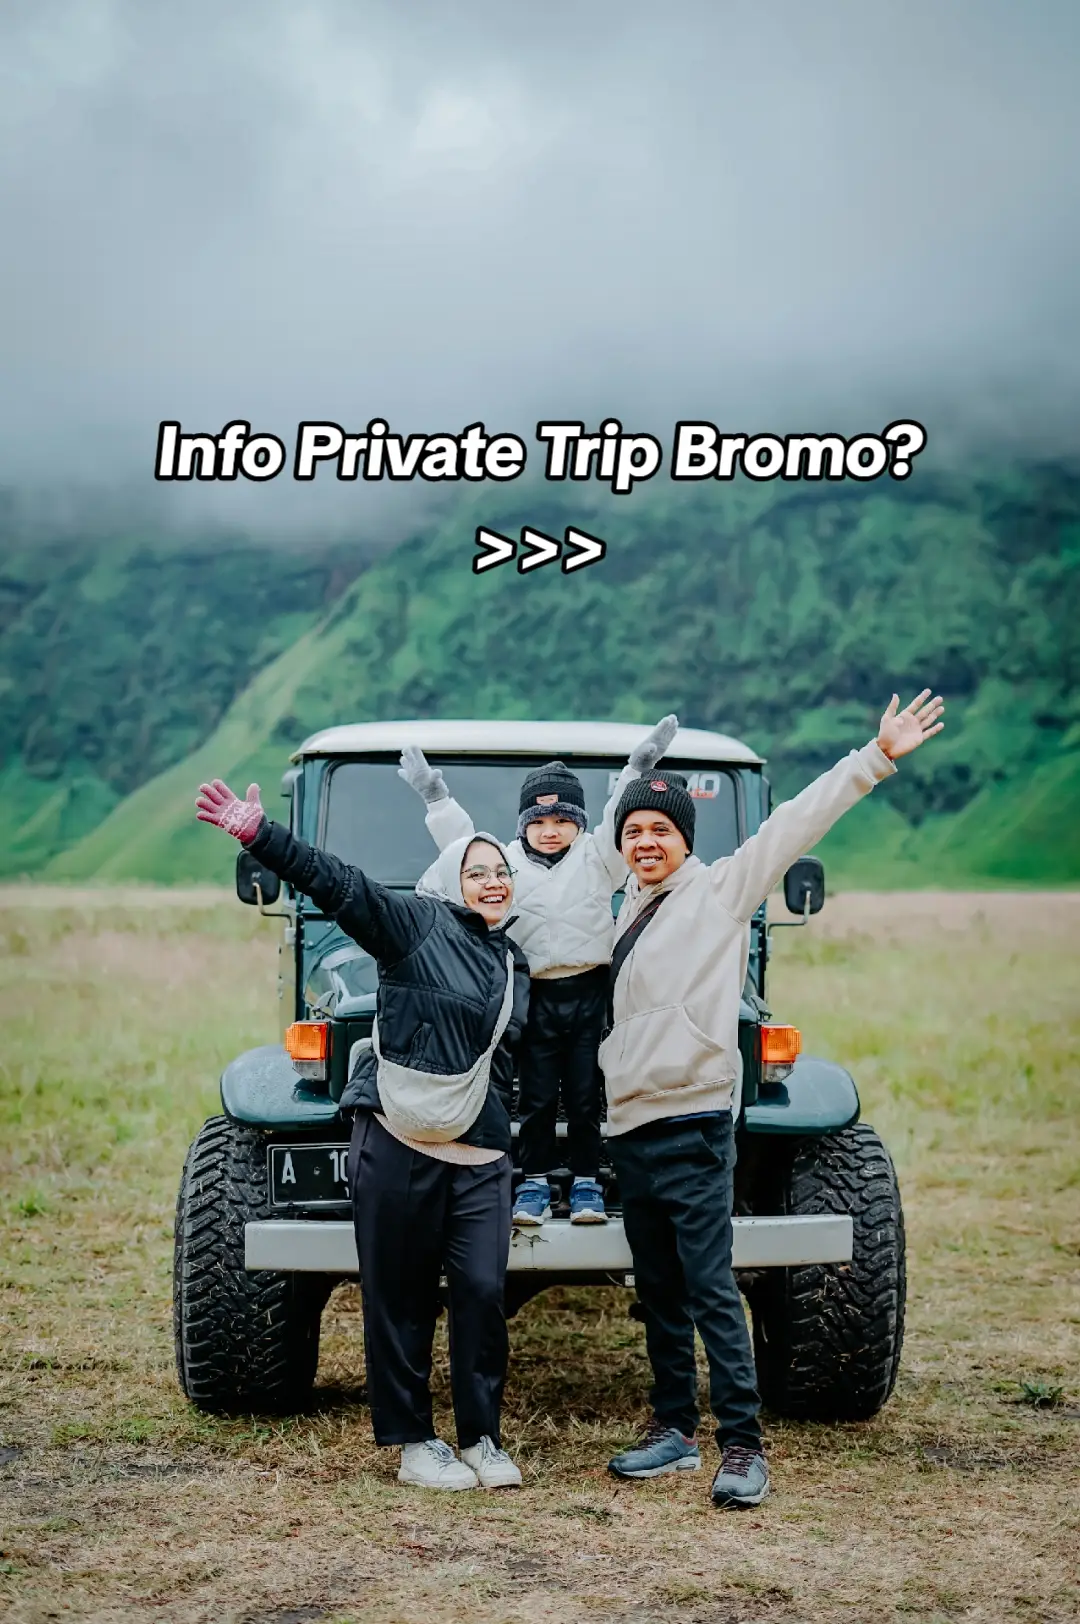 Yuk agendakan liburanmu ke Bromo bersama okejeepbromo 🥰 .  Pemesanan unit banyak ada penawaran harga yang menarik🤗 Reservasi klik link di bio! #bromo #bromotenggersemeru #okejeepbromo #jeepbromo #sewajeepbromo 